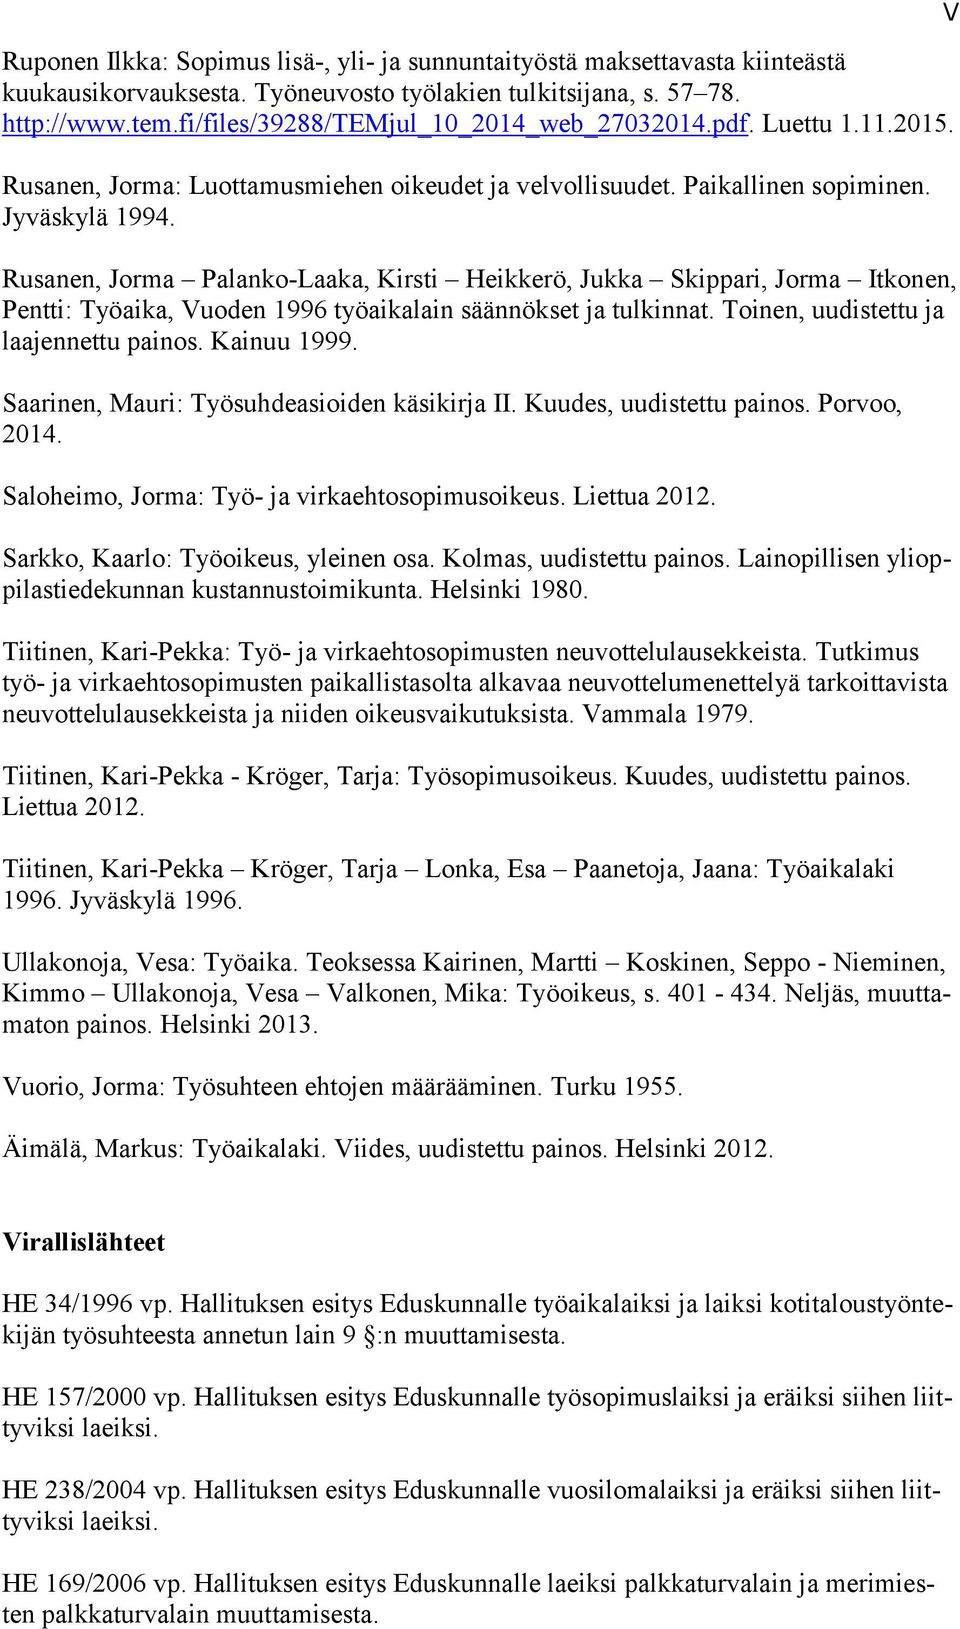 Rusanen, Jorma Palanko-Laaka, Kirsti Heikkerö, Jukka Skippari, Jorma Itkonen, Pentti: Työaika, Vuoden 1996 työaikalain säännökset ja tulkinnat. Toinen, uudistettu ja laajennettu painos. Kainuu 1999.